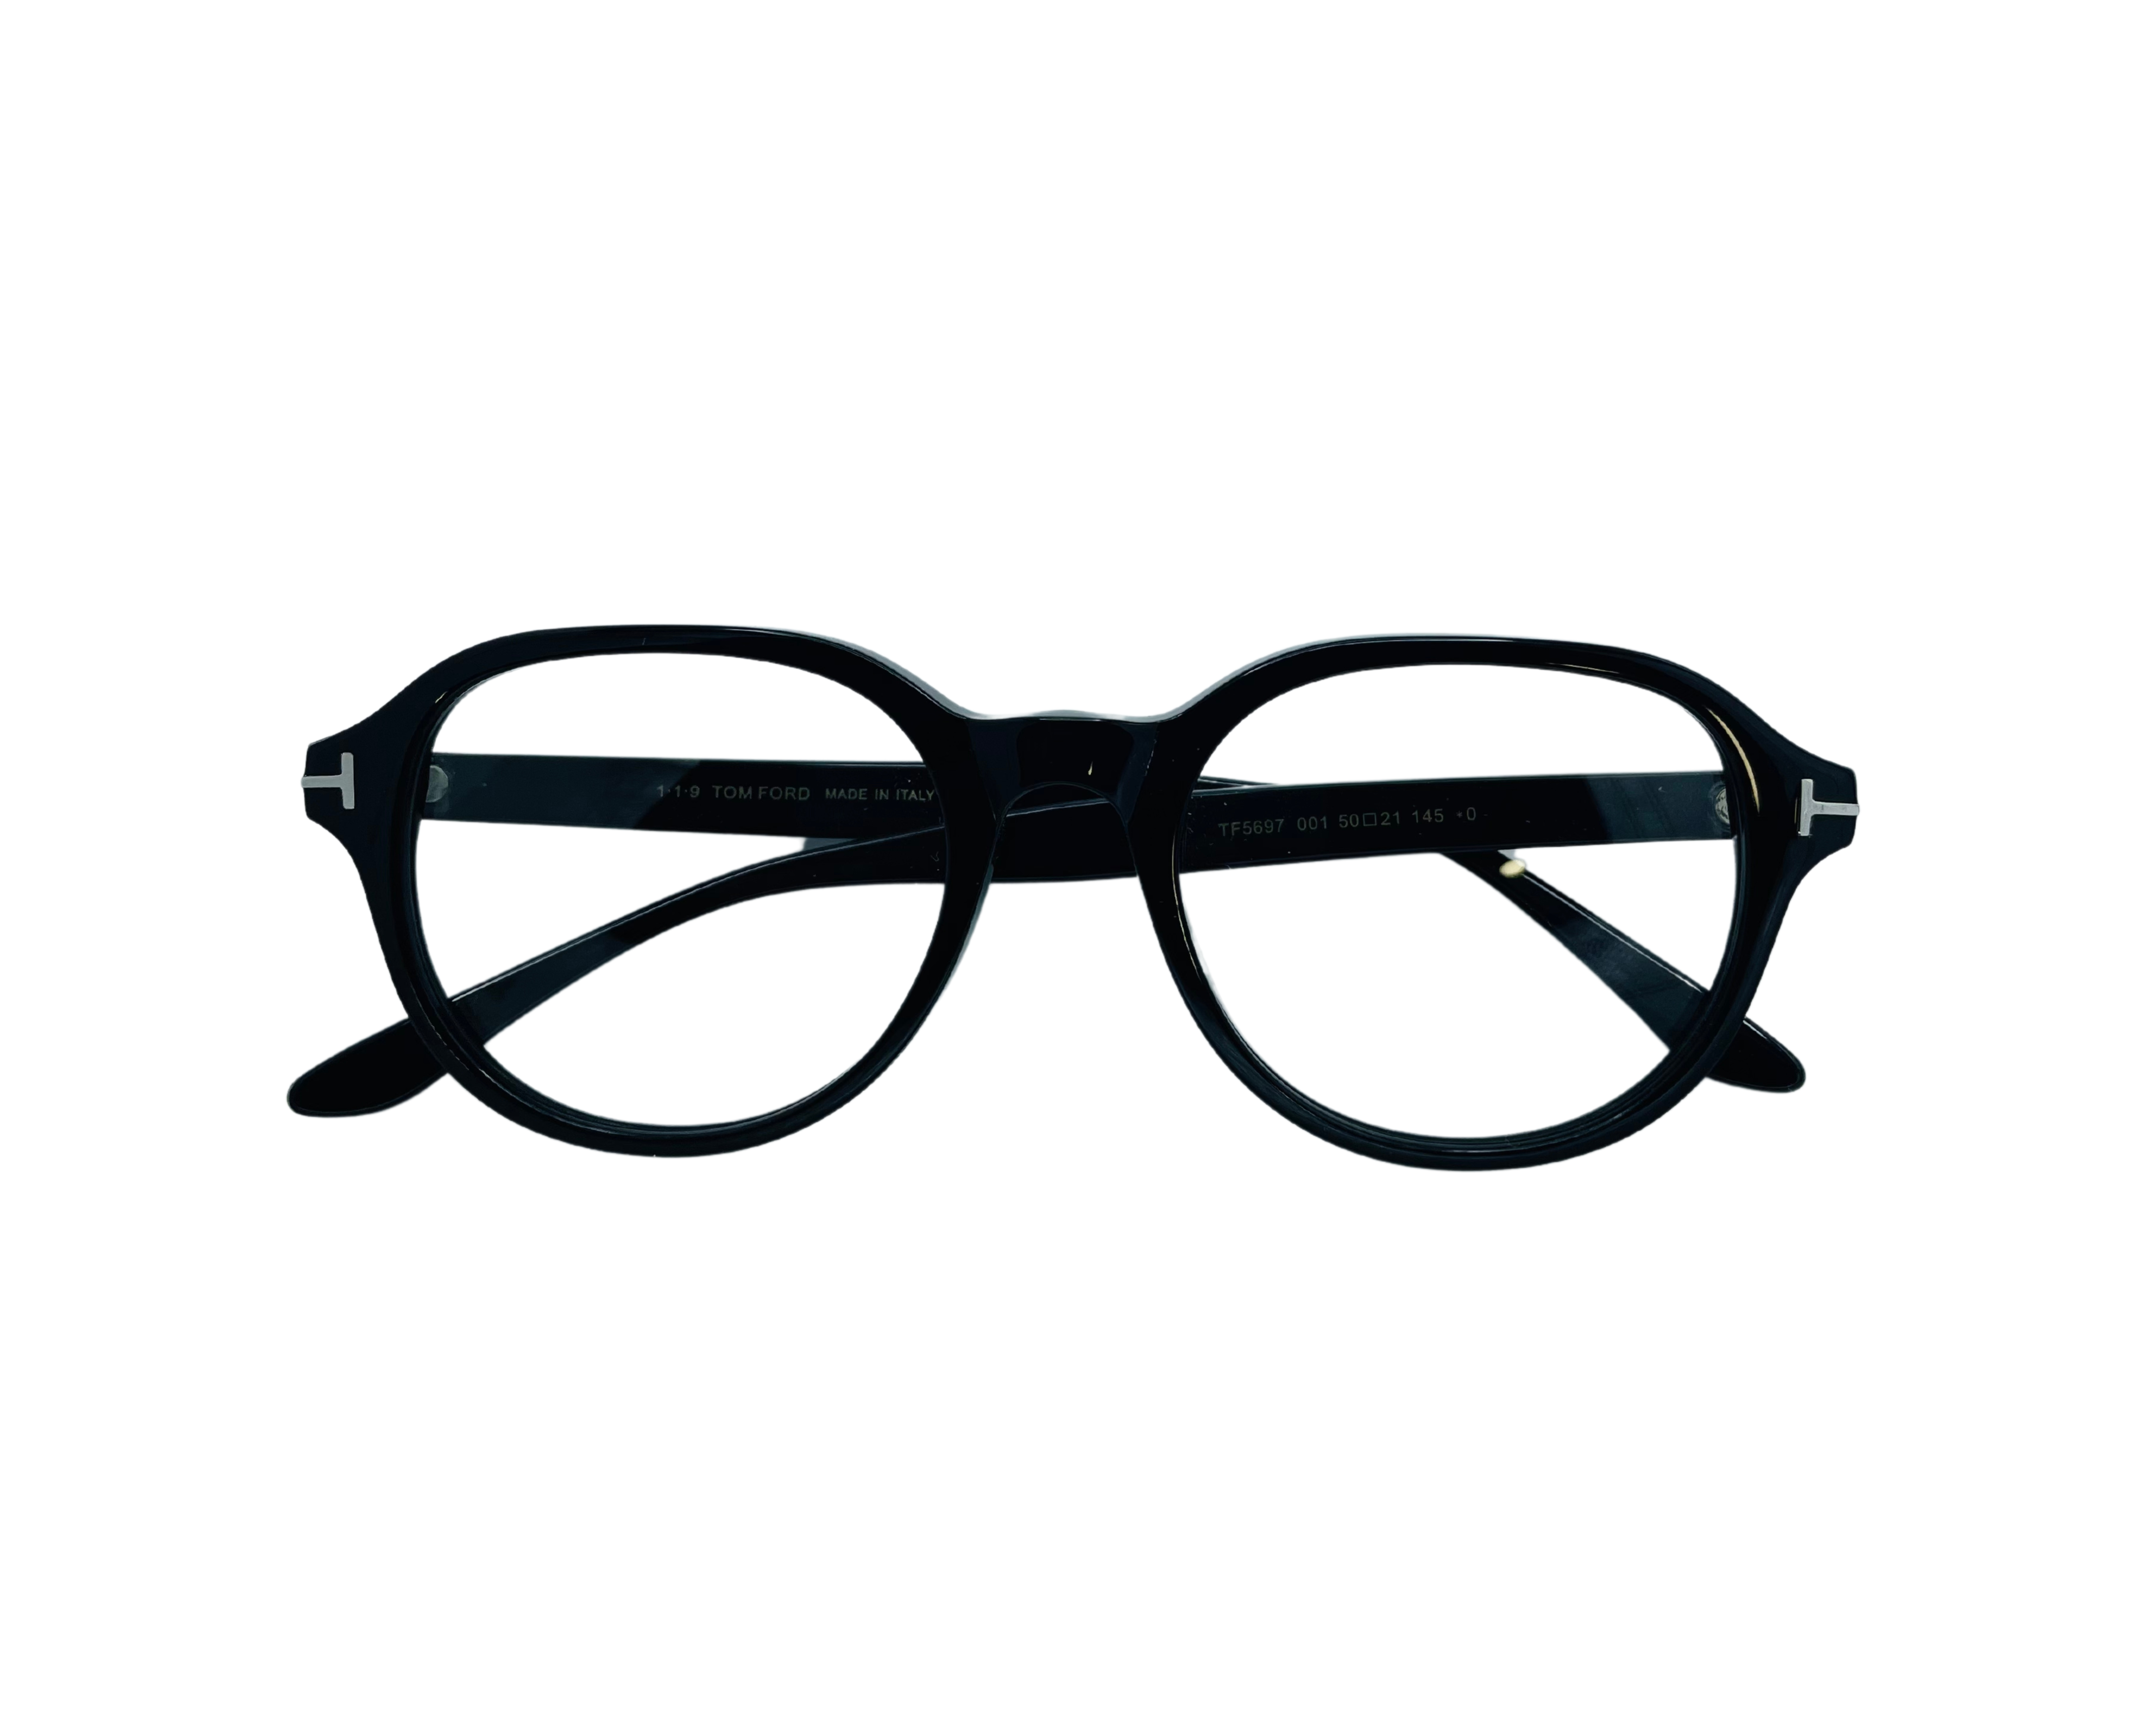 NS Luxury - 5697 - Black - Eyeglasses